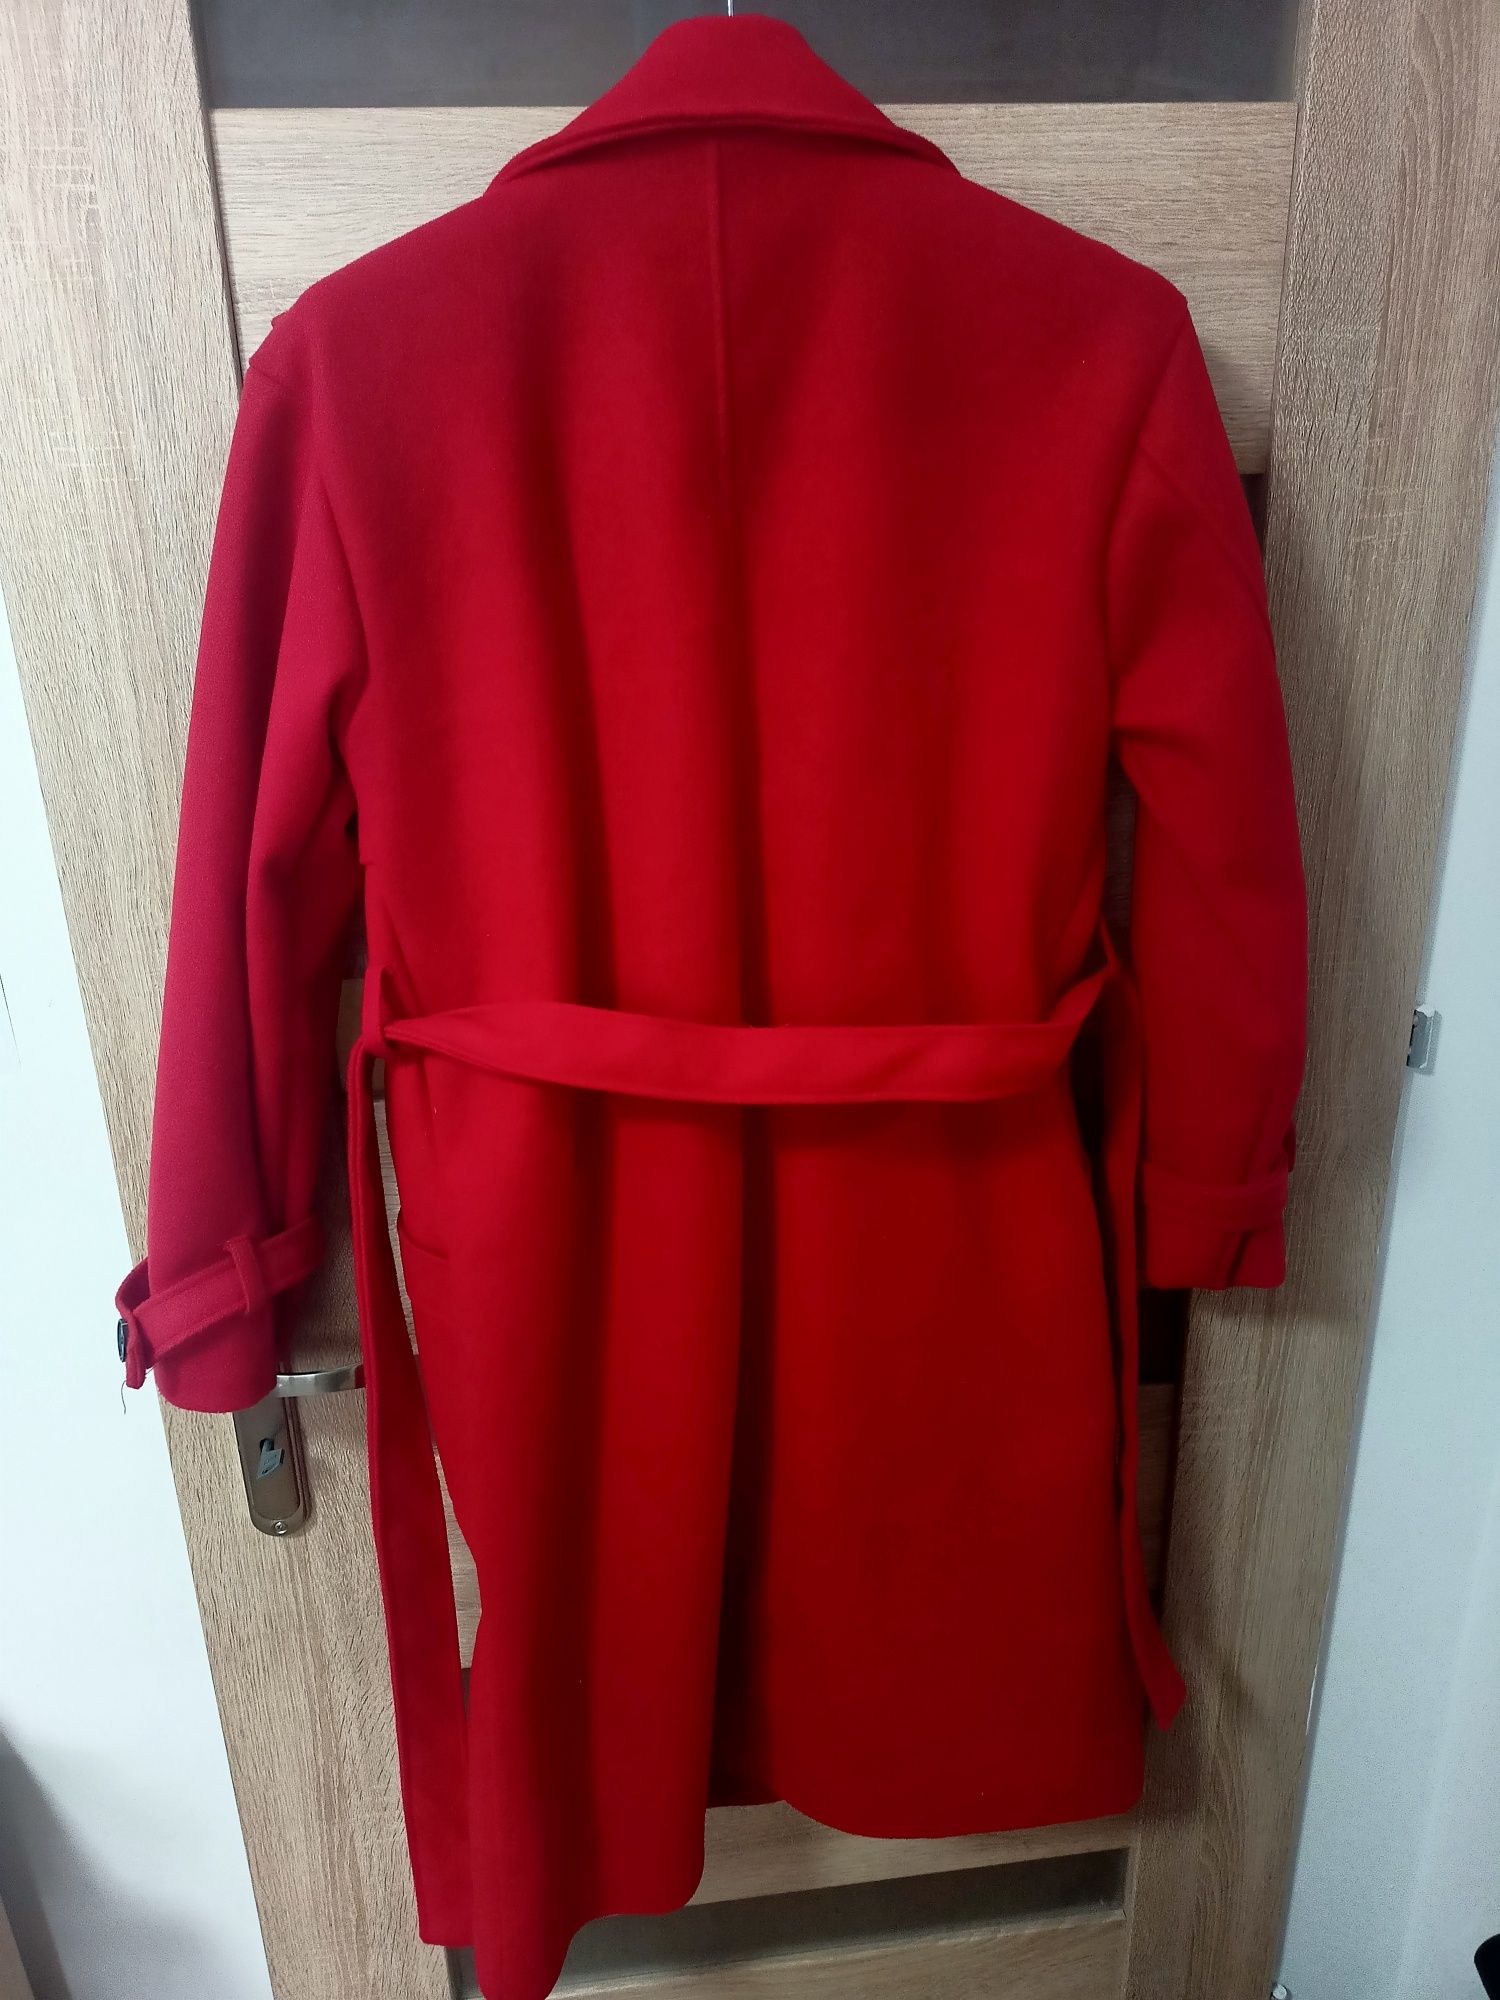 NOWY elegancki damski płaszcz czerwony made in italy